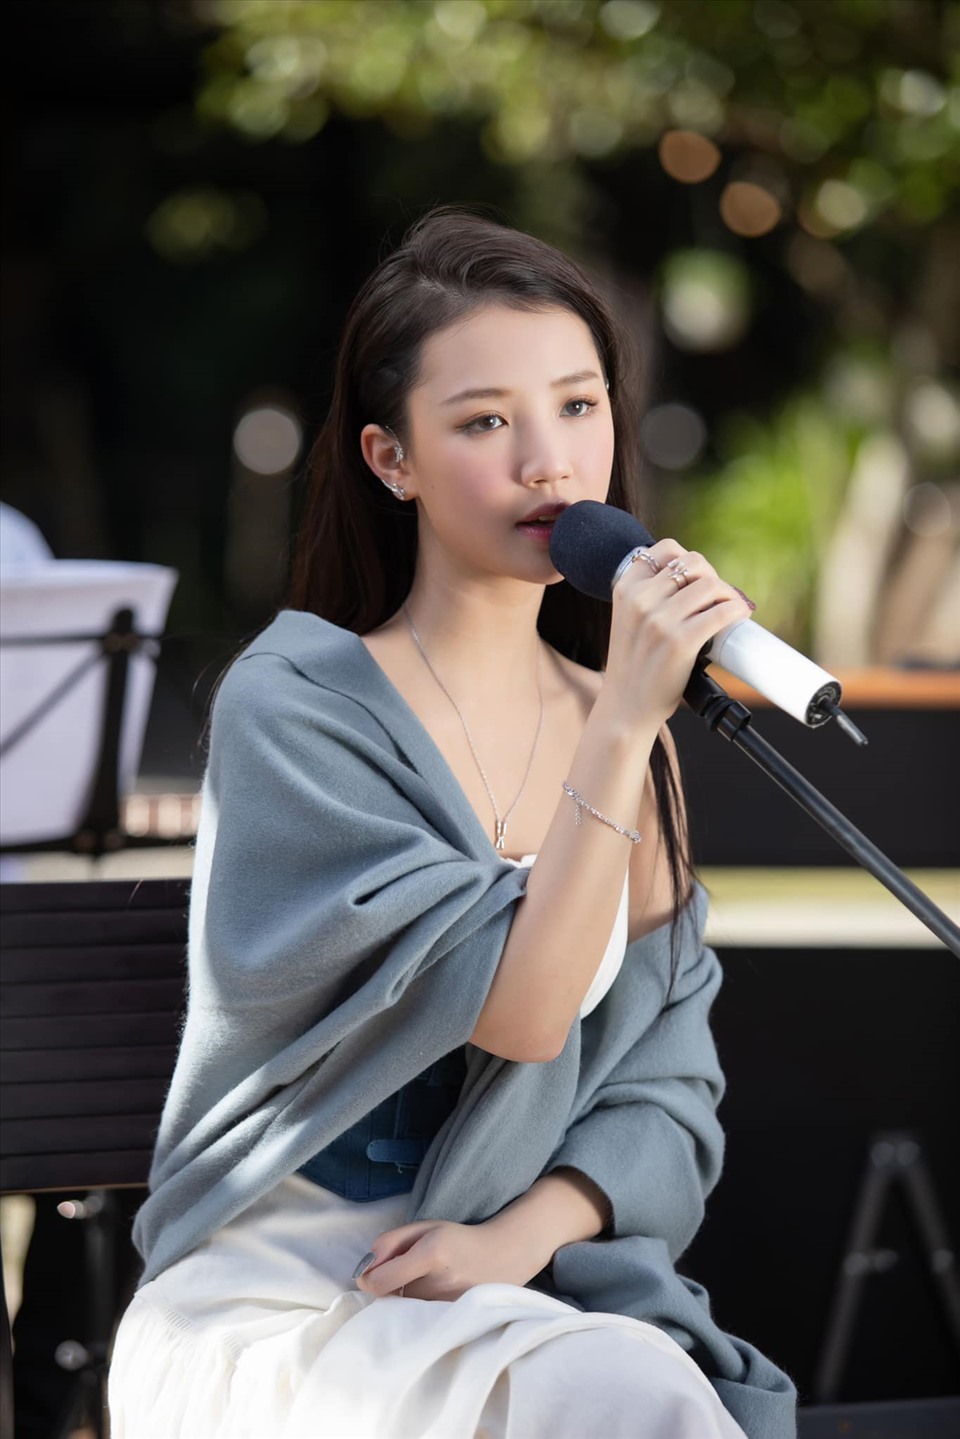 Amee sinh năm 2000, tên thật là Trần Huyền My. Amee vốn được biết đến là một ca sĩ nổi bật của thế hệ trẻ.